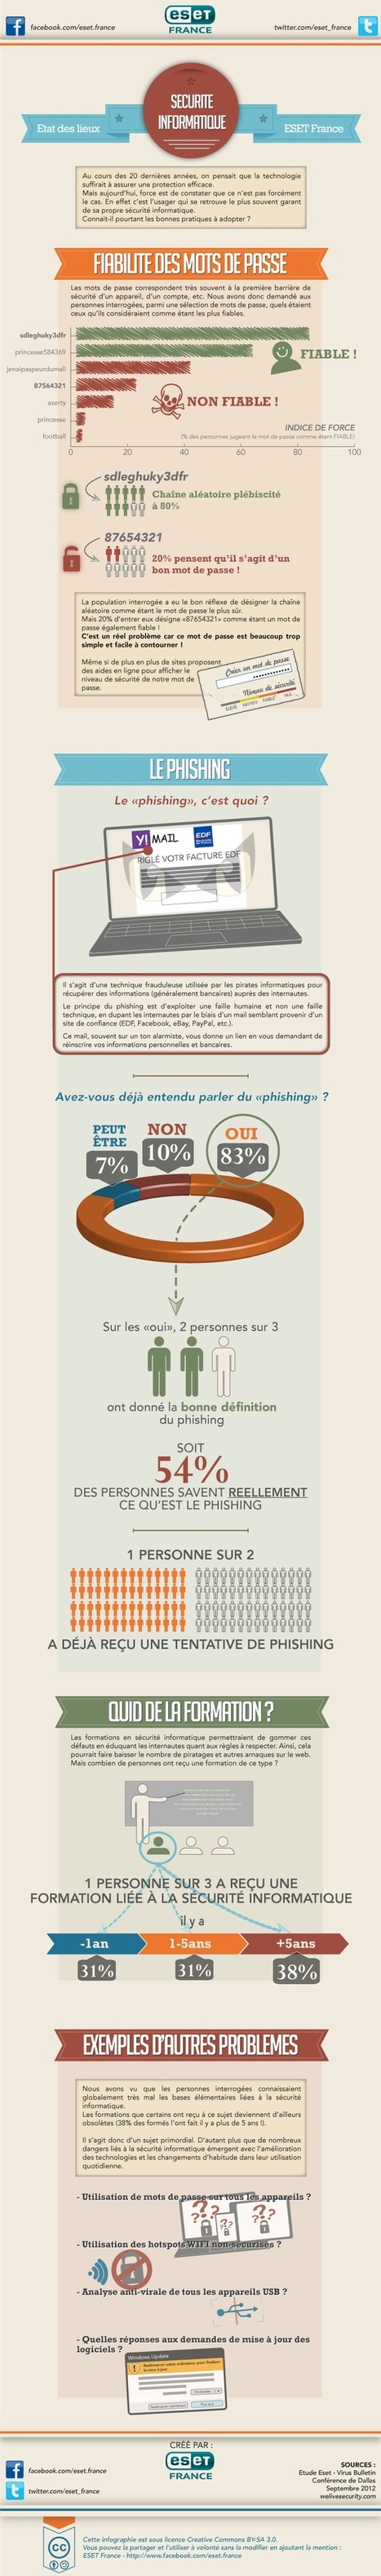 Infographie ESET : Le comportement des internautes par rapport à la sécurité en ligne | Libertés Numériques | Scoop.it